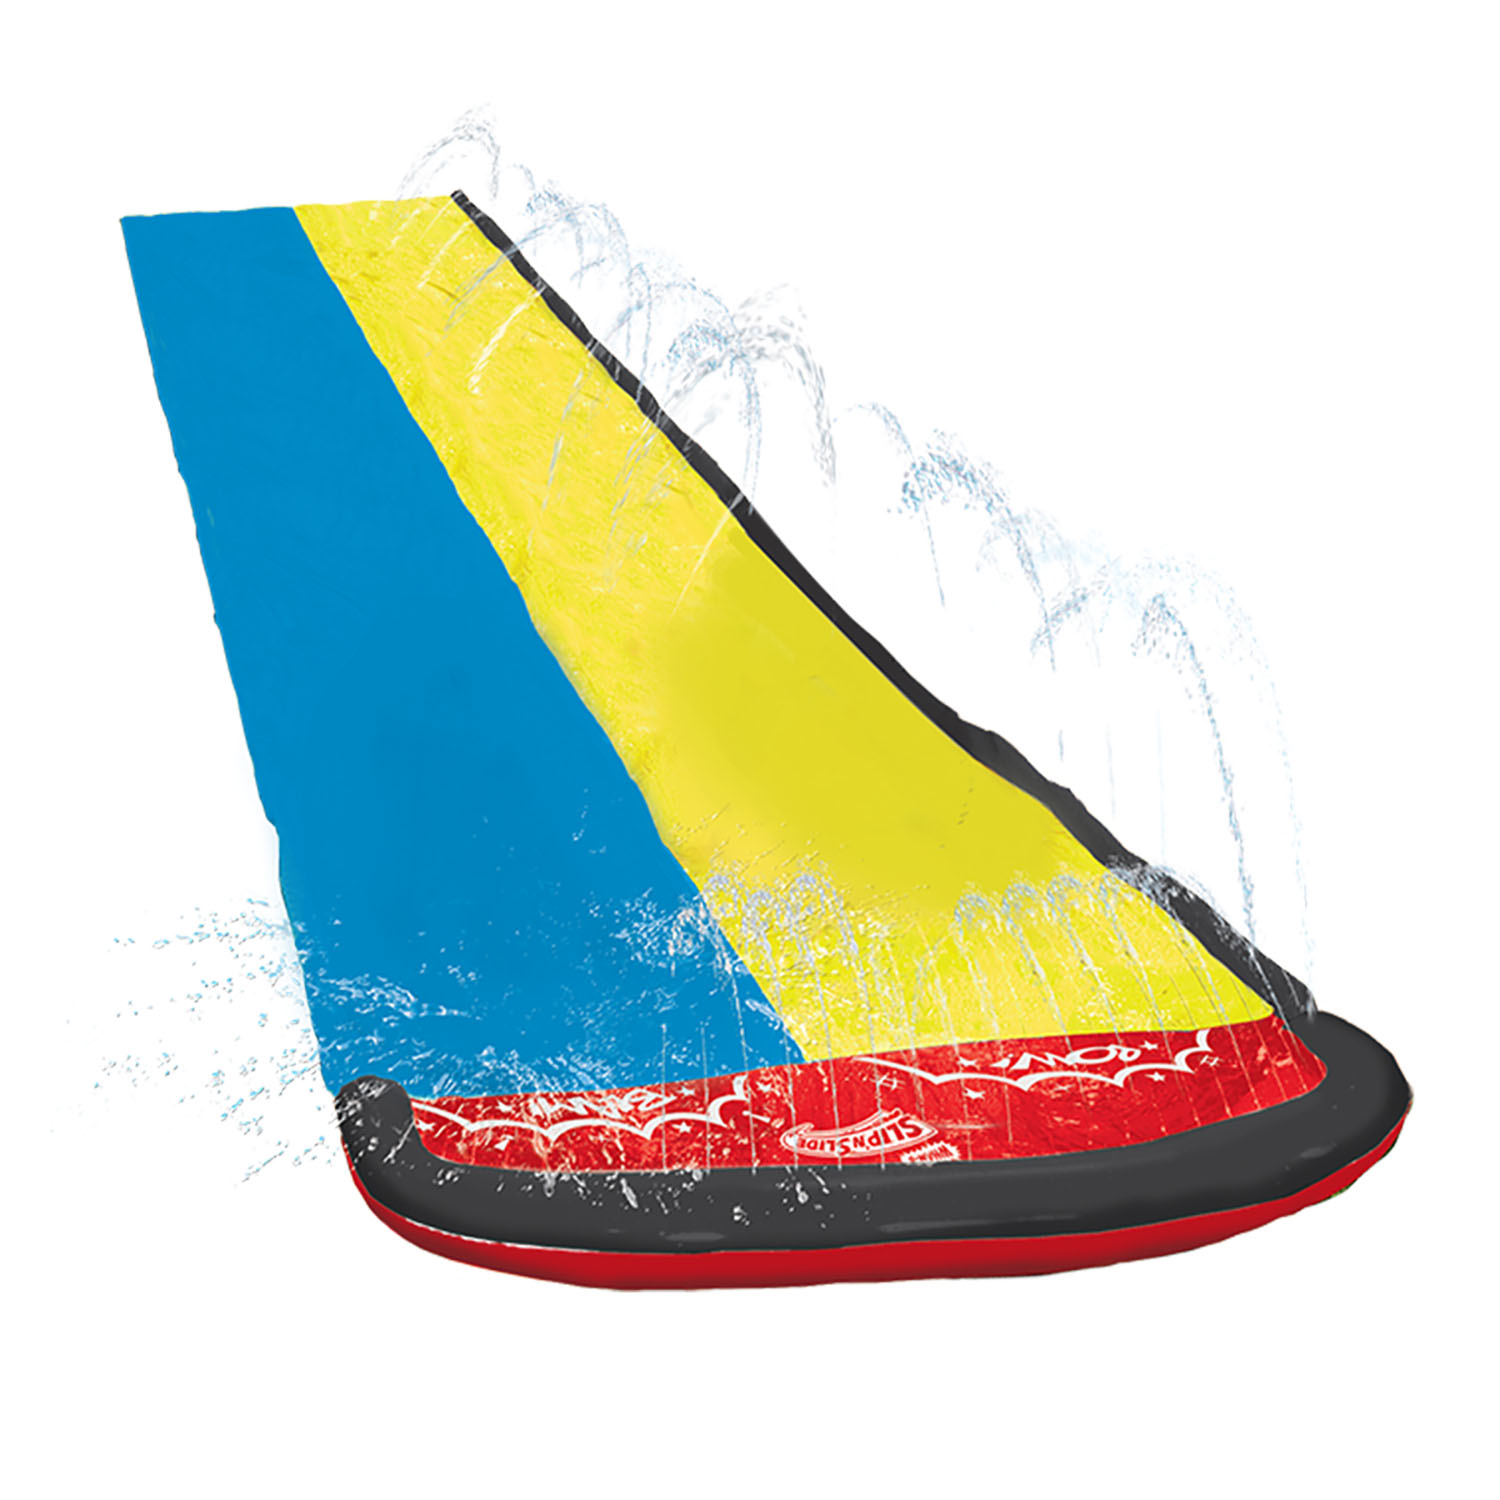 Wham-O Slip N' Slide 16 Feet Double Sliding Lane Water Racer w/Boogie Board - image 3 of 6